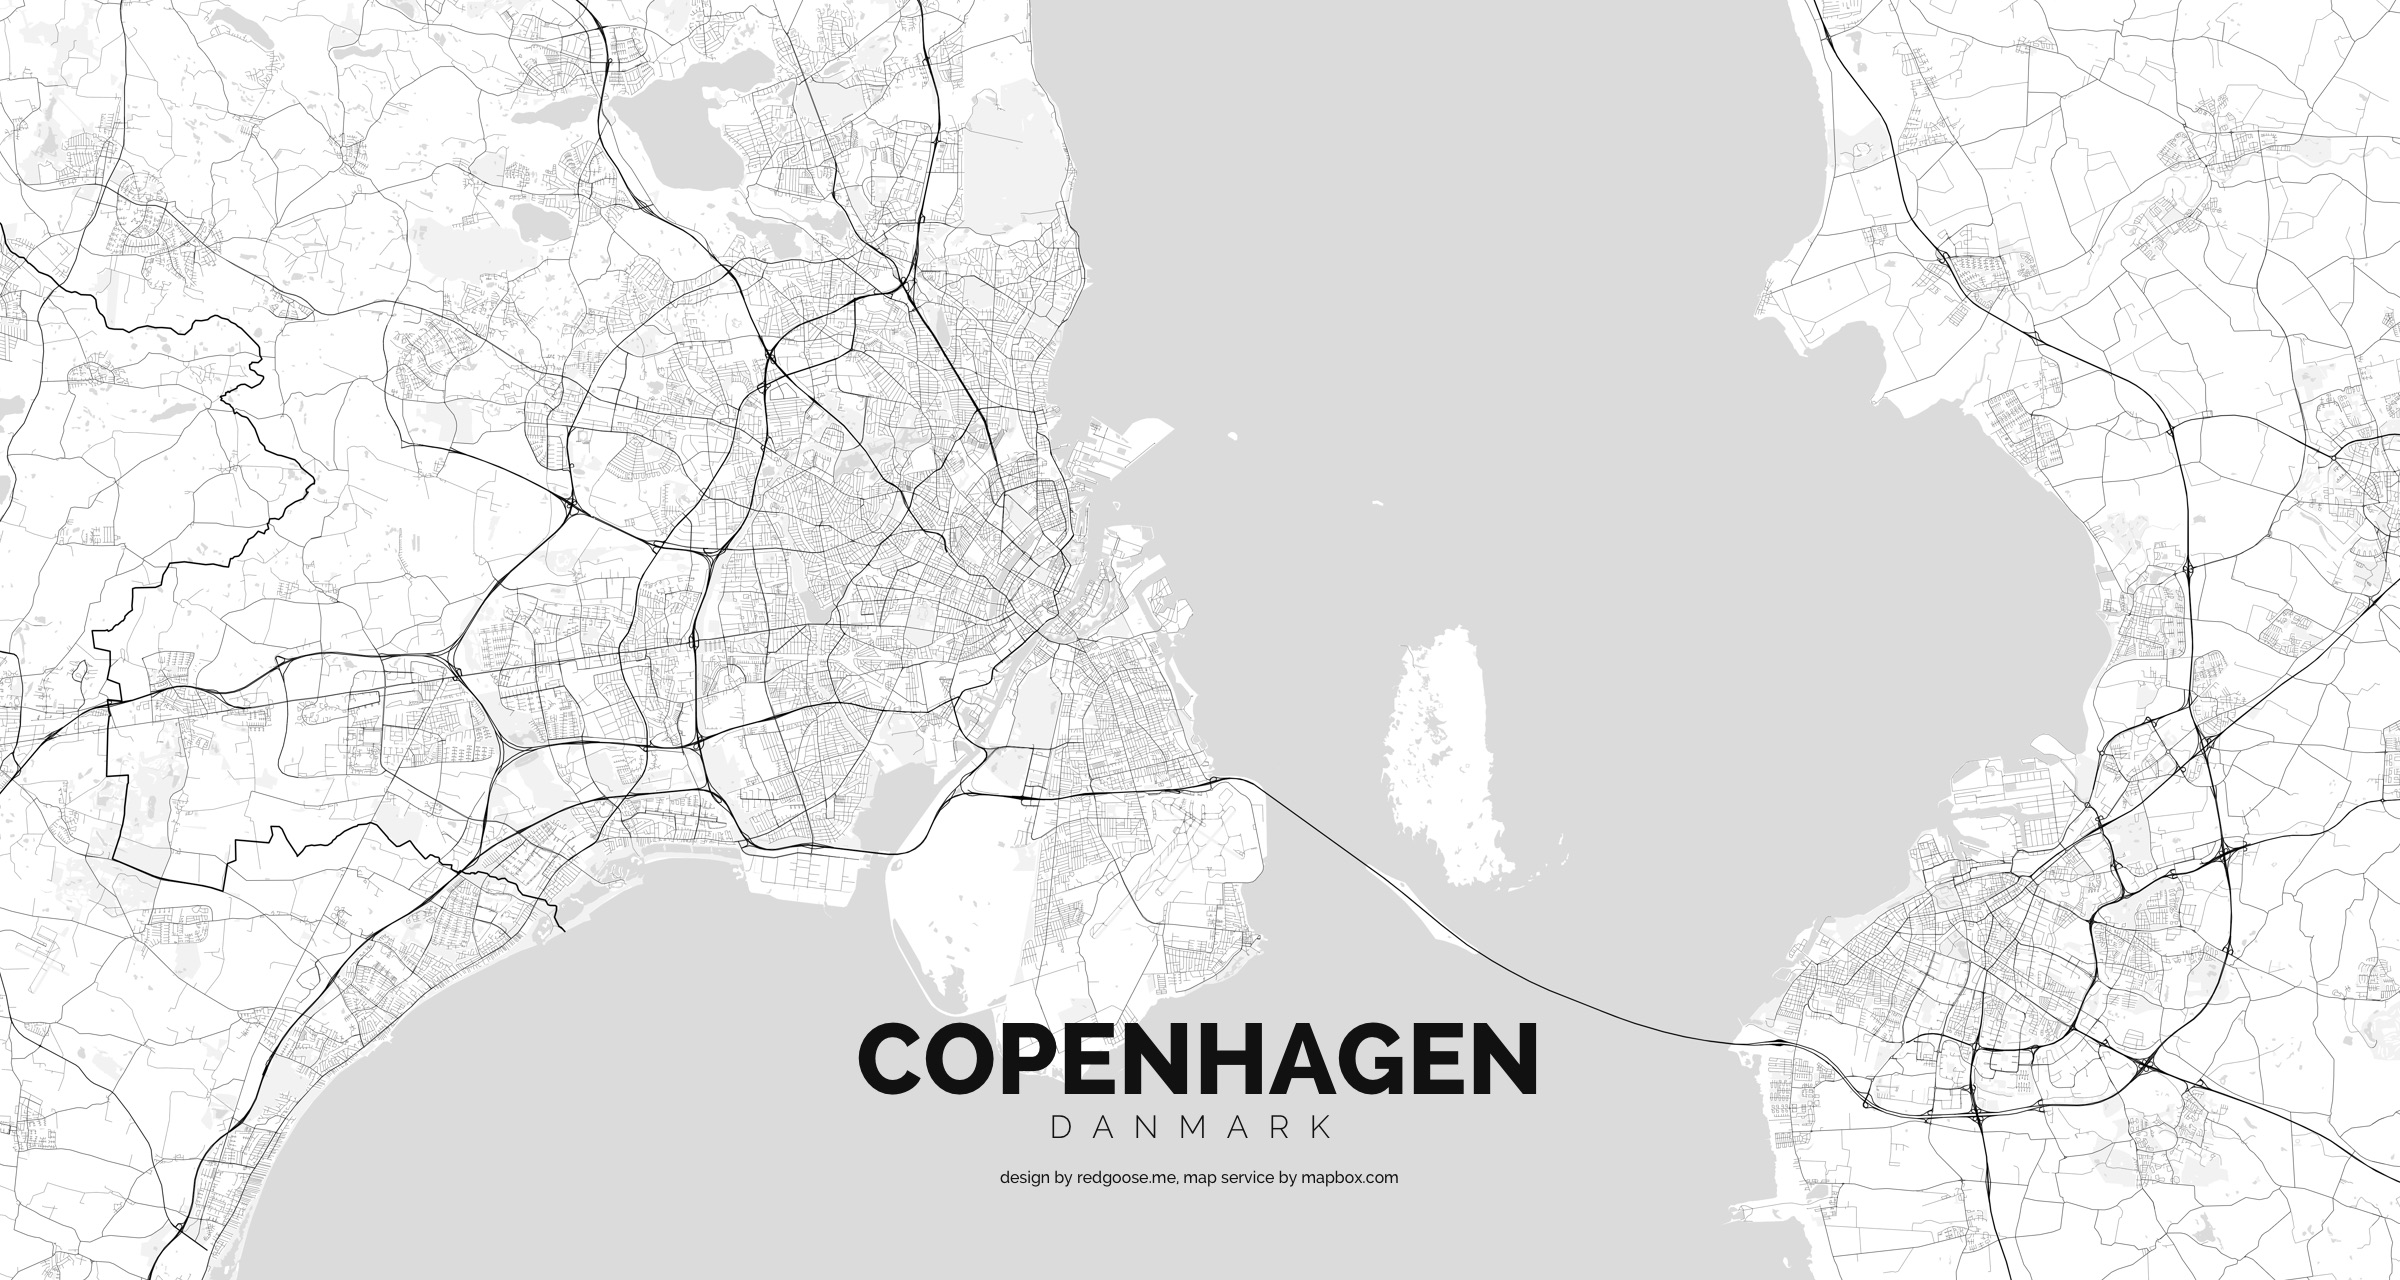 Danmark_-_Copenhagen.jpg